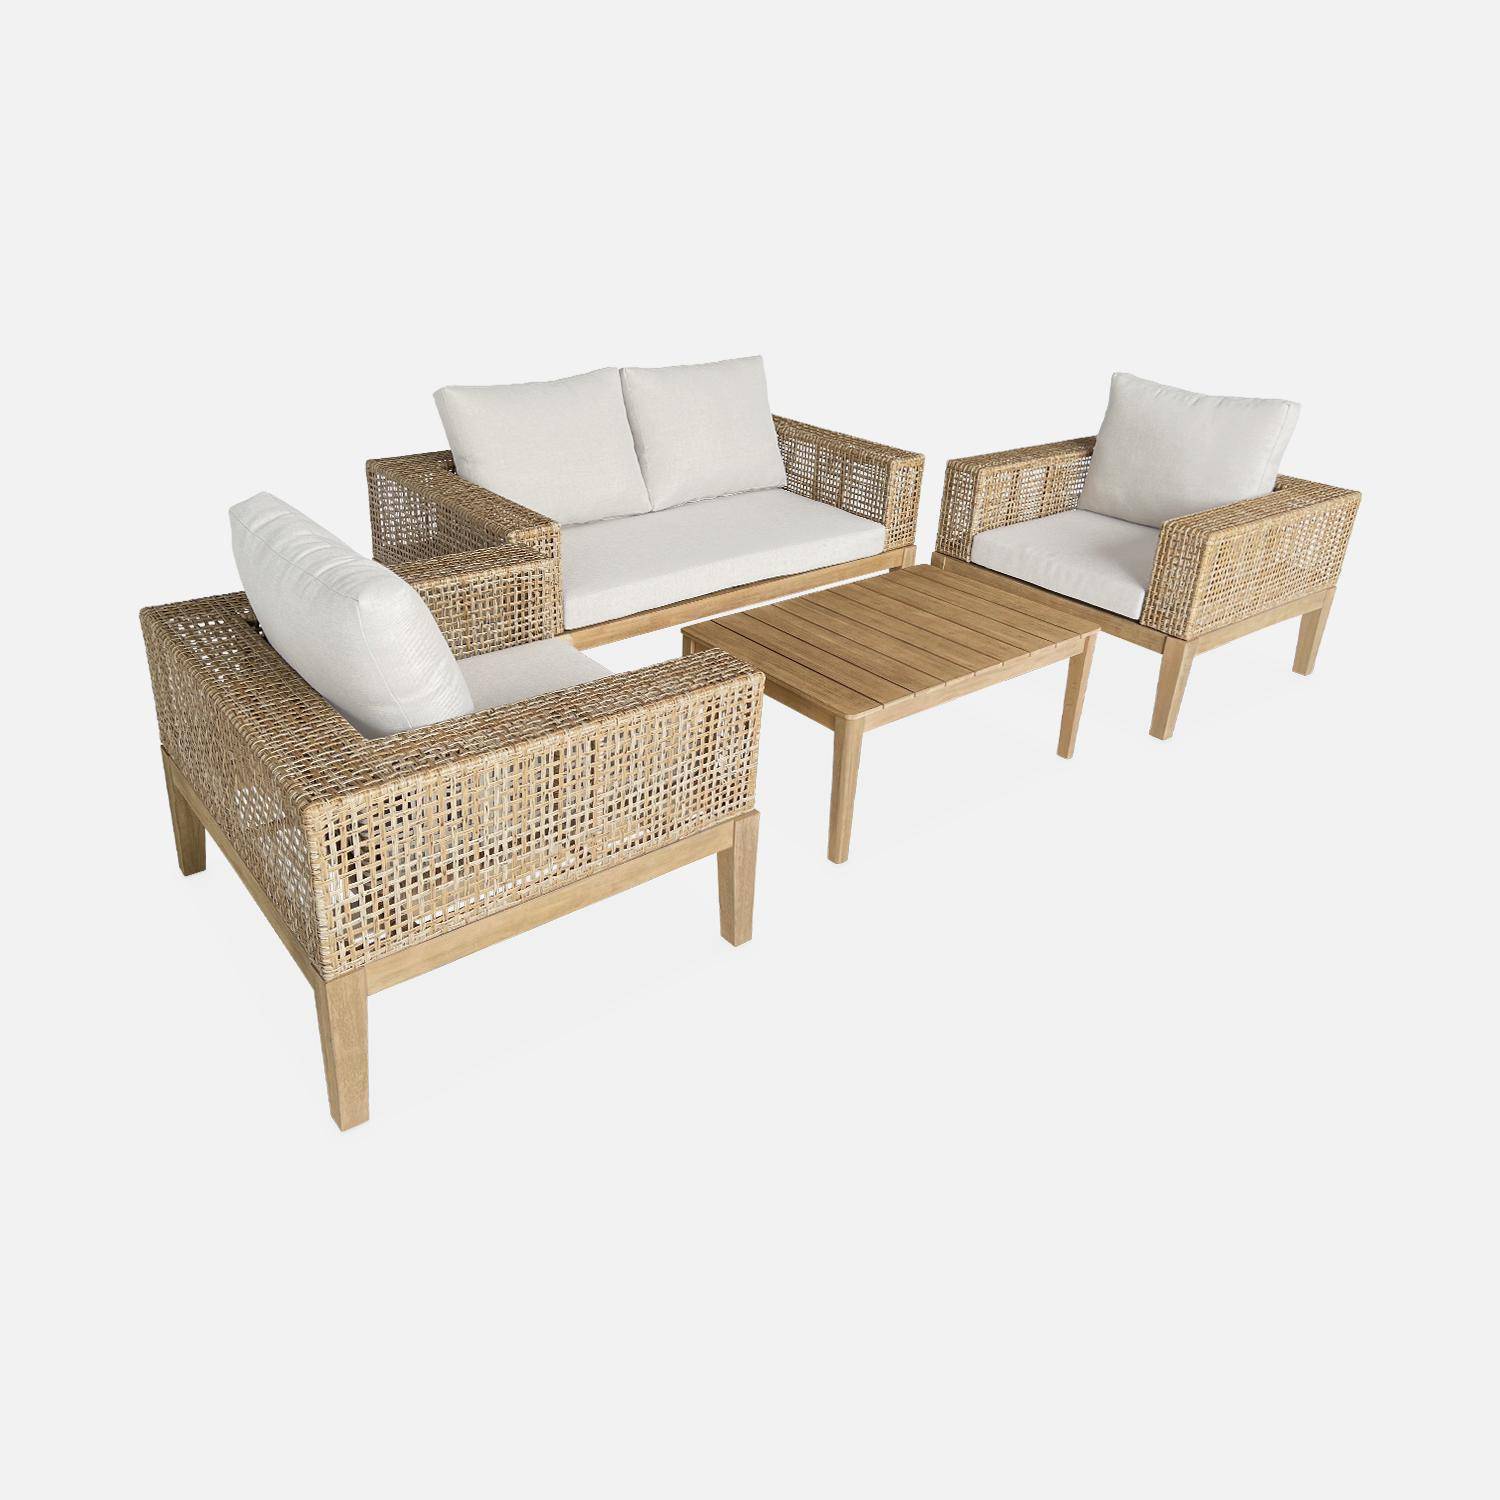 Gartenmöbel Olinda, Rohrgeflecht und Holz, 4-Sitzer, beige, FSC Akazienholz, gebürstet, gebleicht,sweeek,Photo3